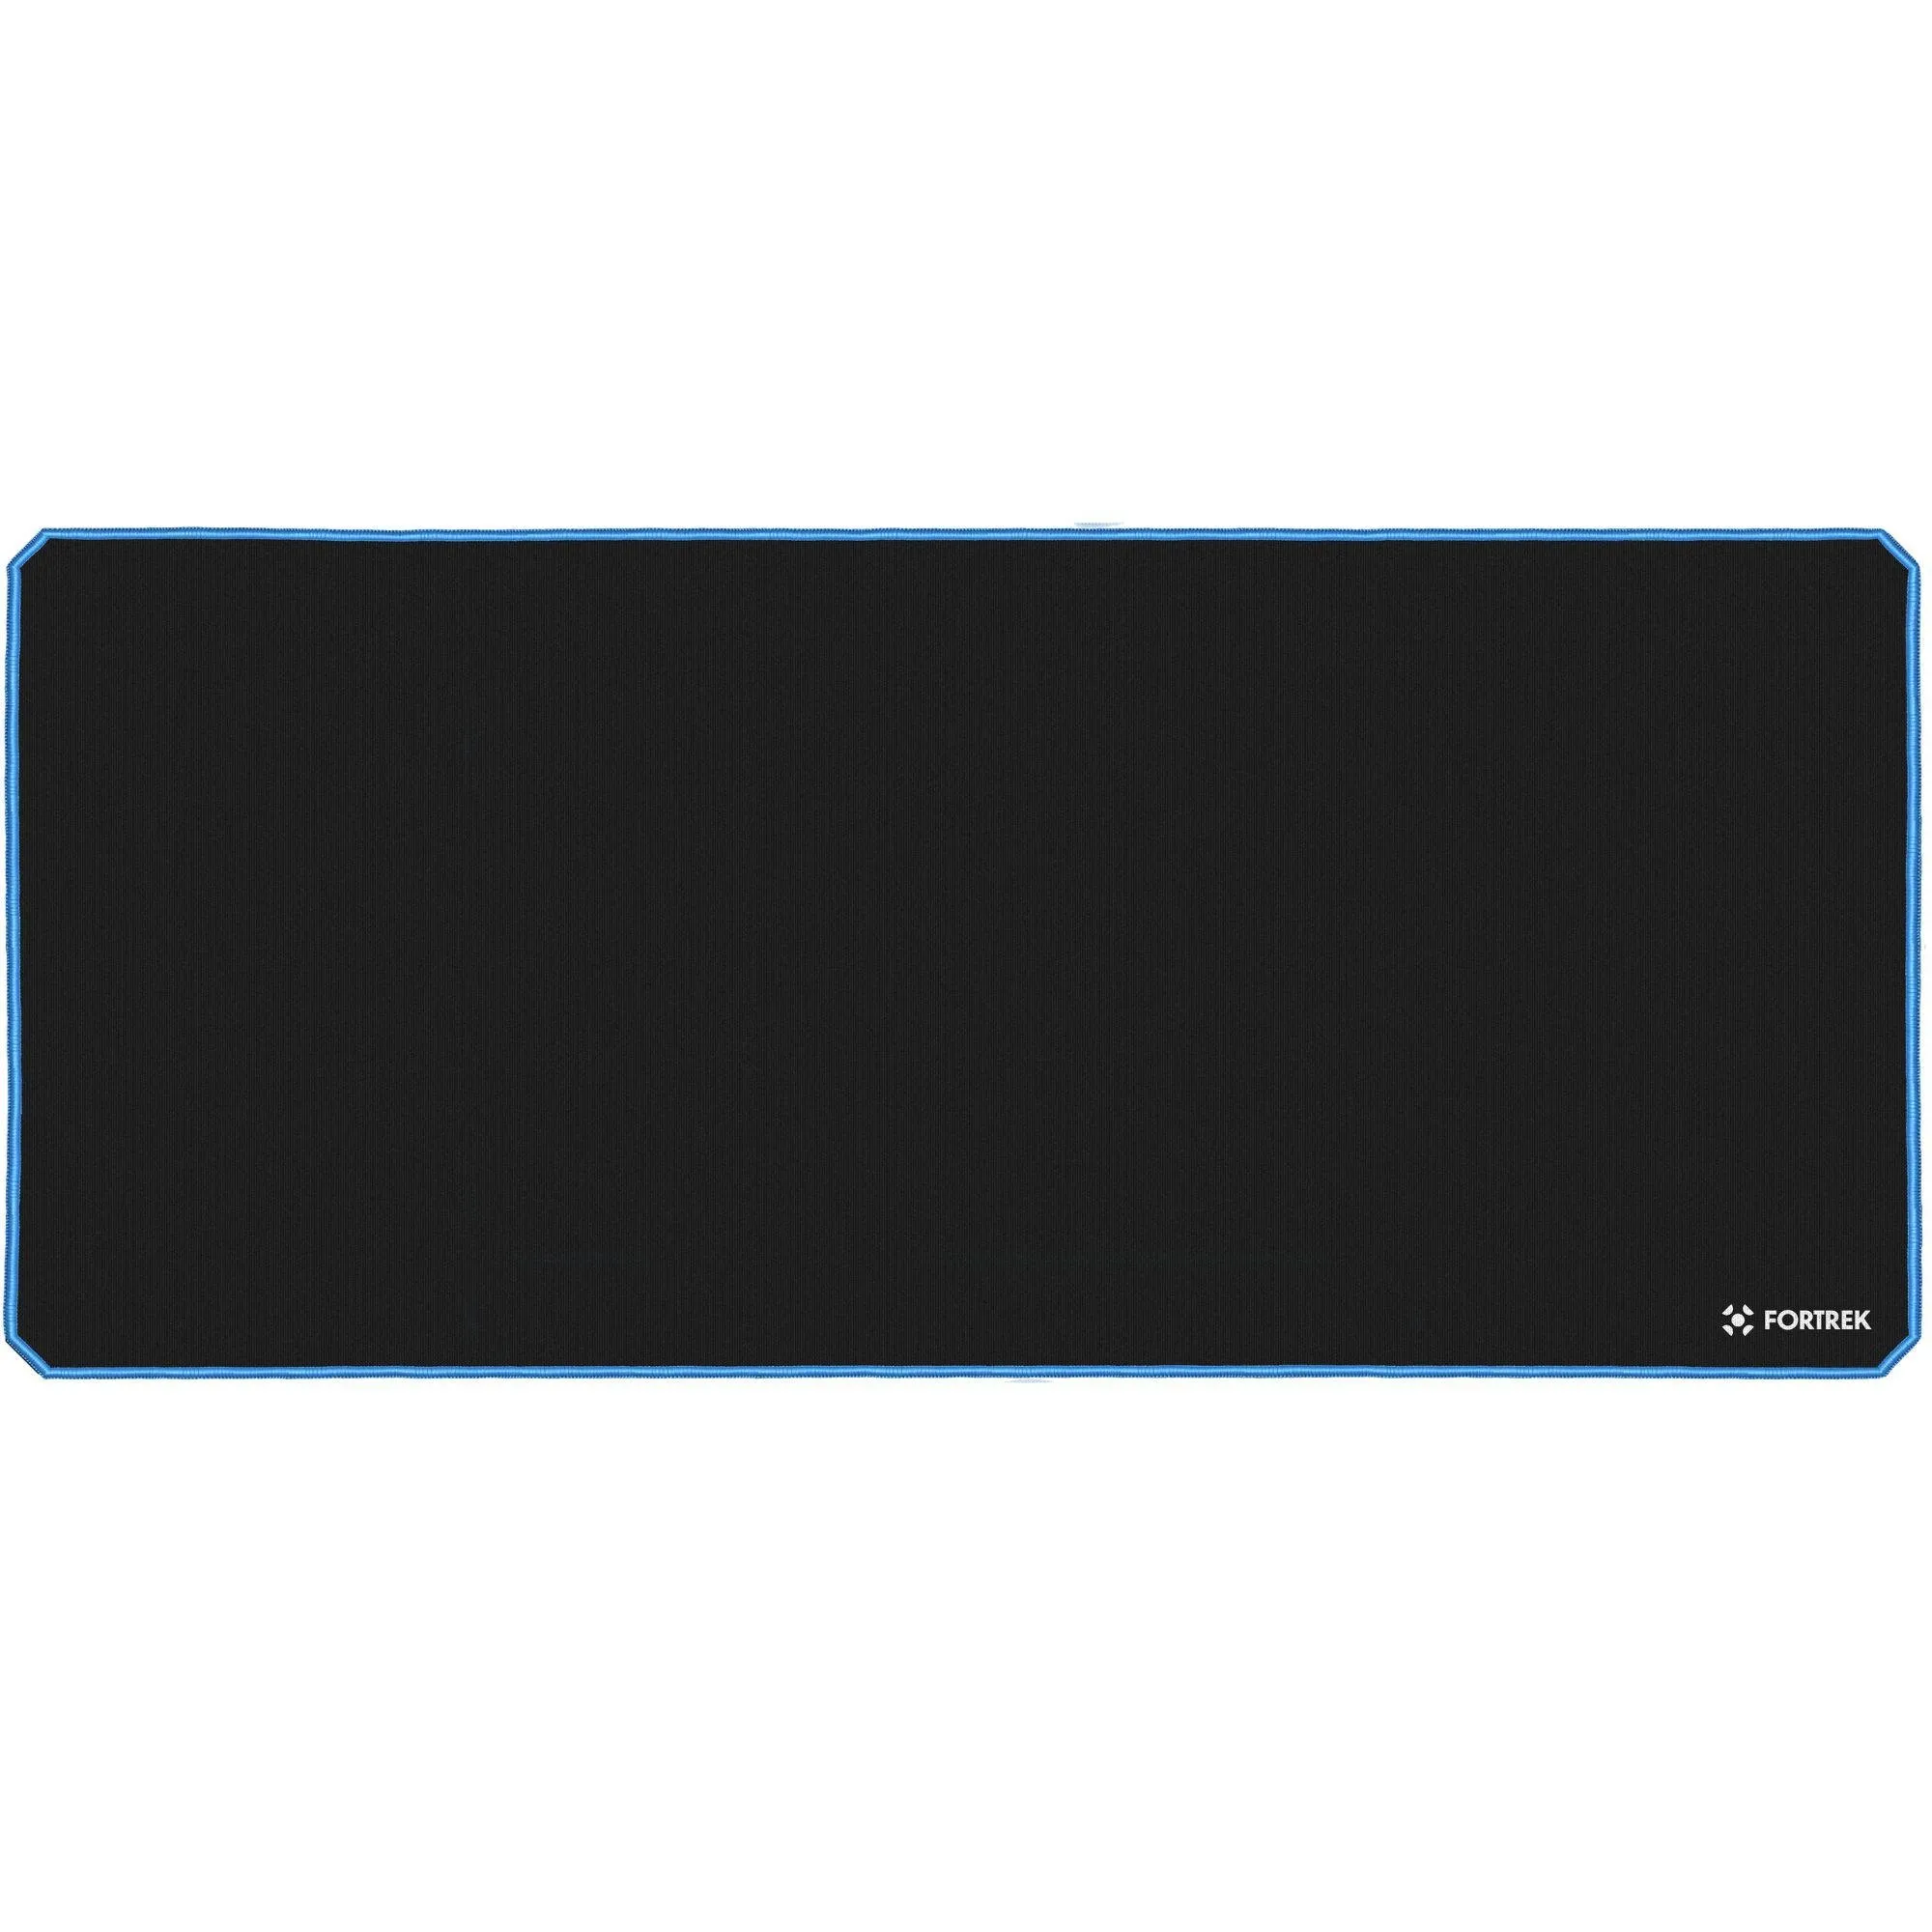 Mouse Pad Gamer Fortrek Speed MPG104 (900x400mm) Azul por 64,00 à vista no boleto/pix ou parcele em até 2x sem juros. Compre na loja Mundomax!